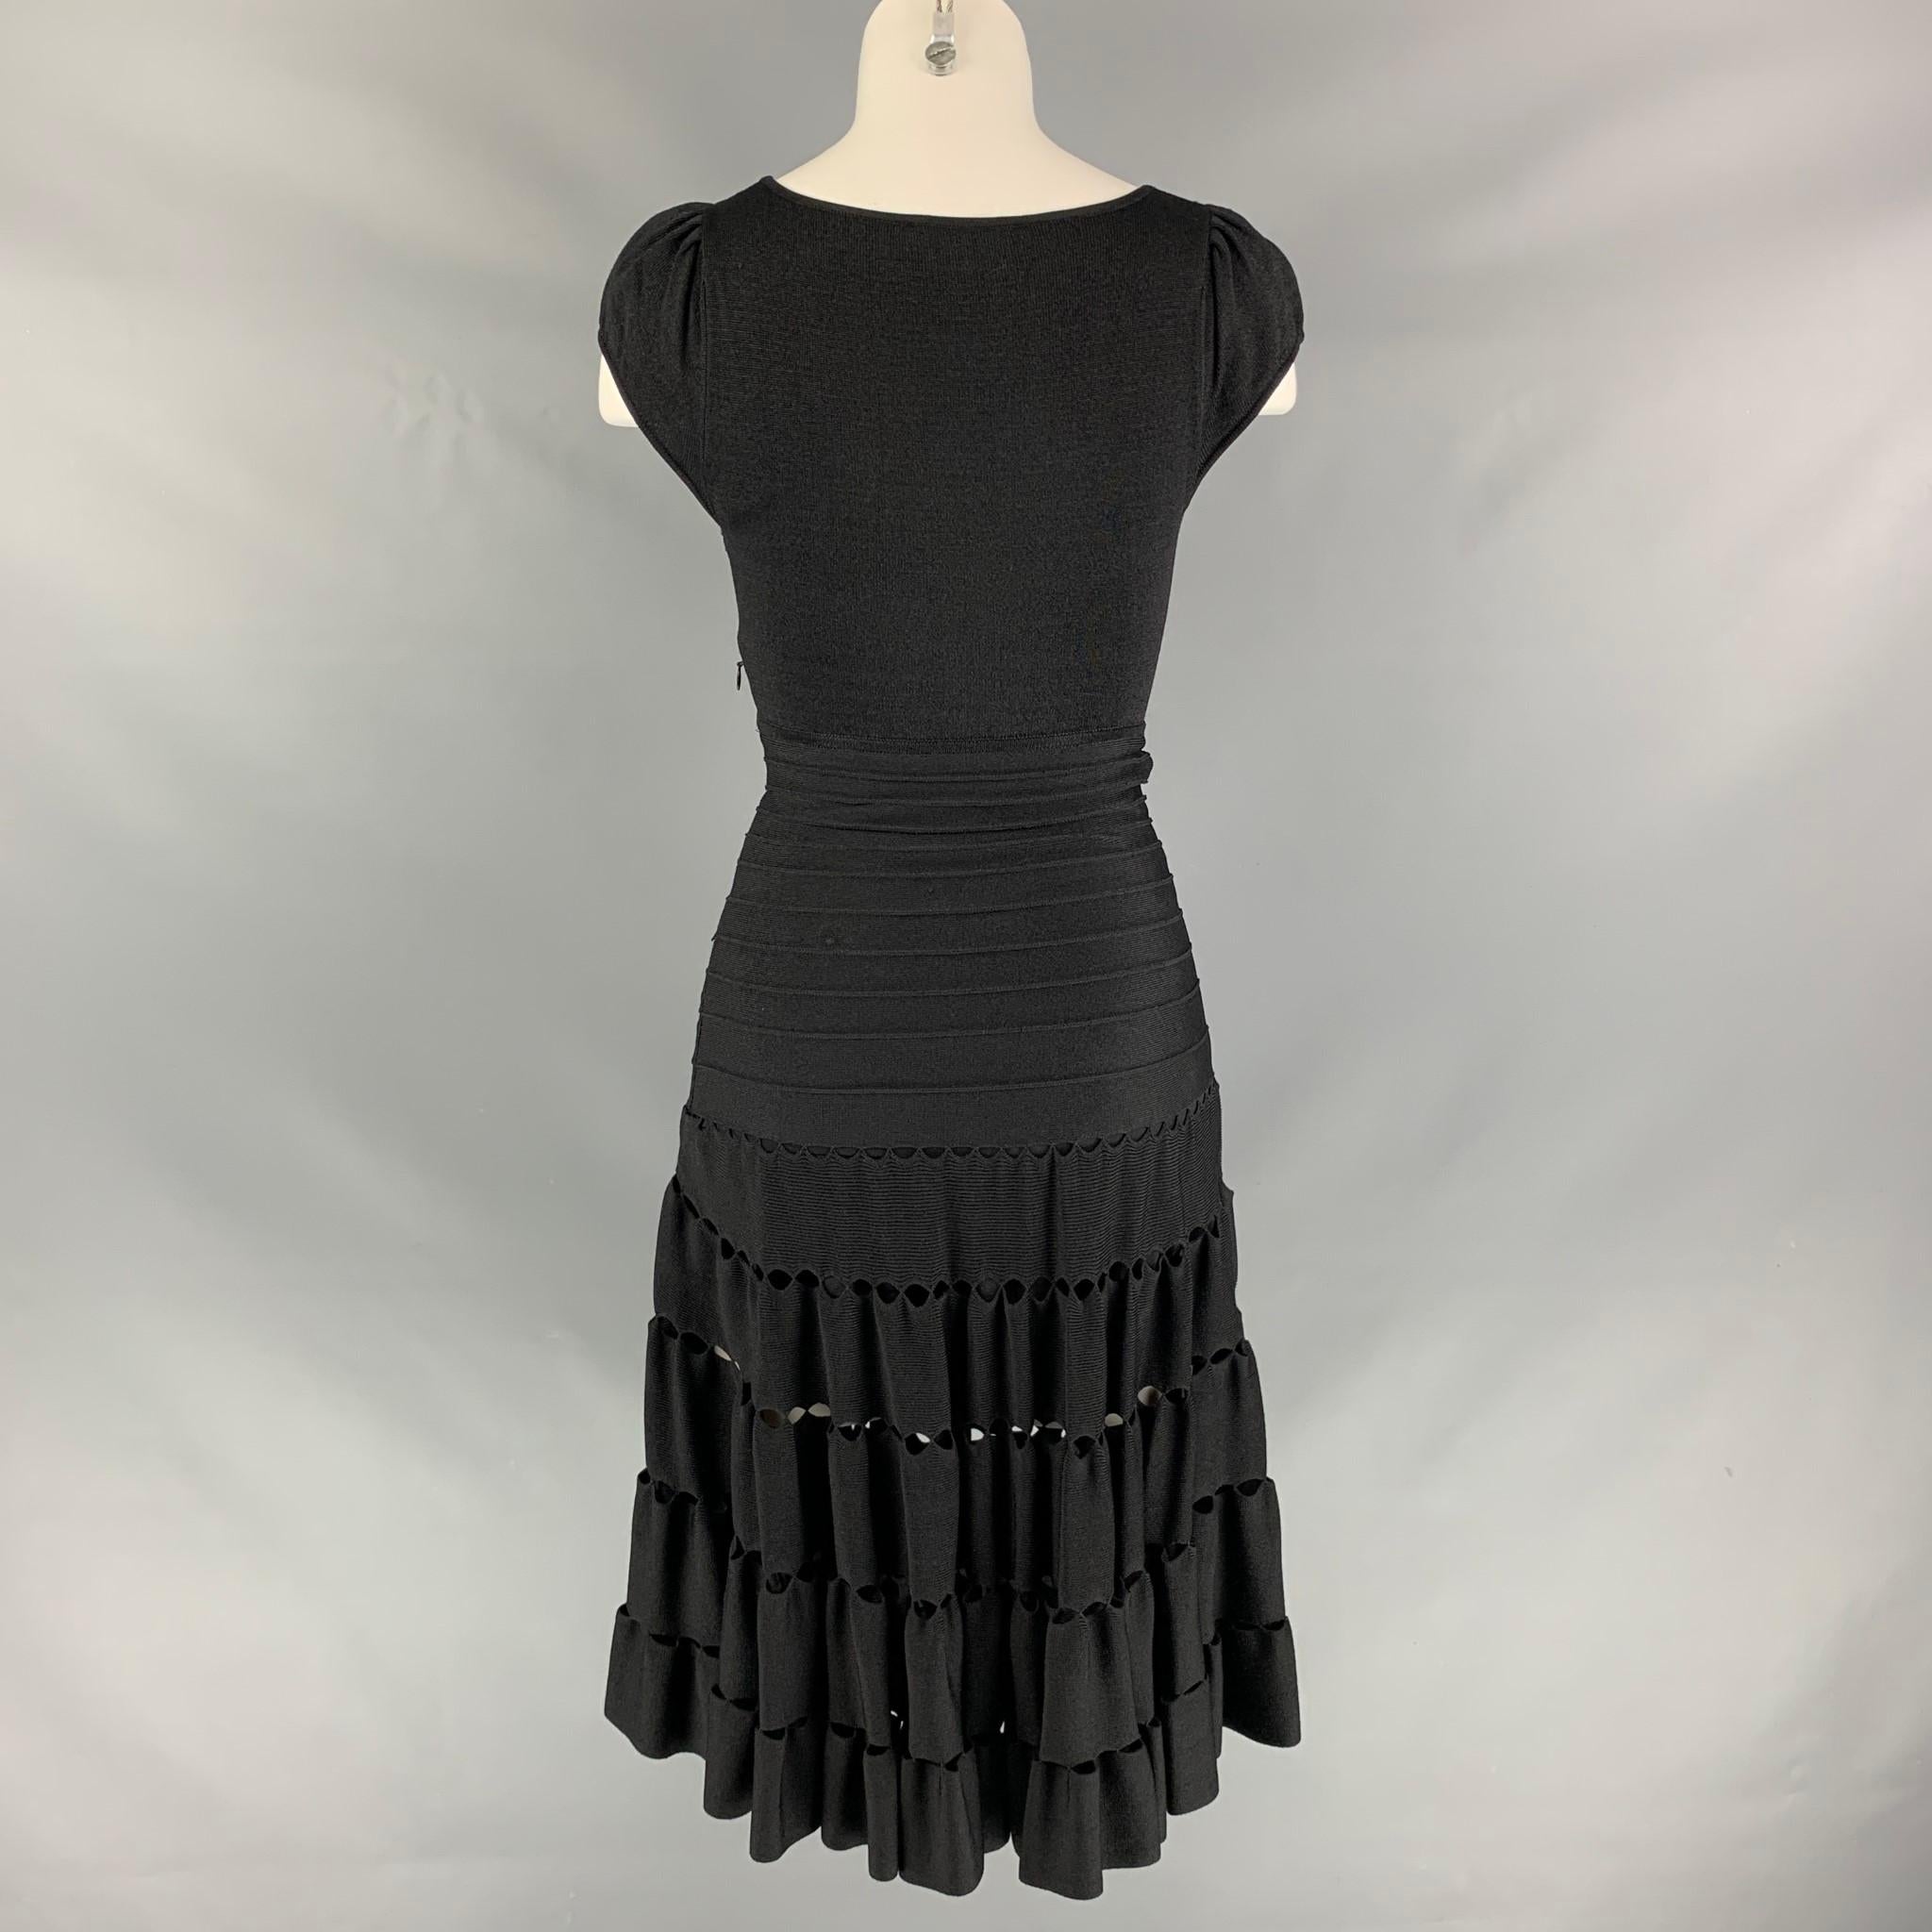 Women's ZAC POSEN Size XS Black Viscose Blend Cut Out Dress